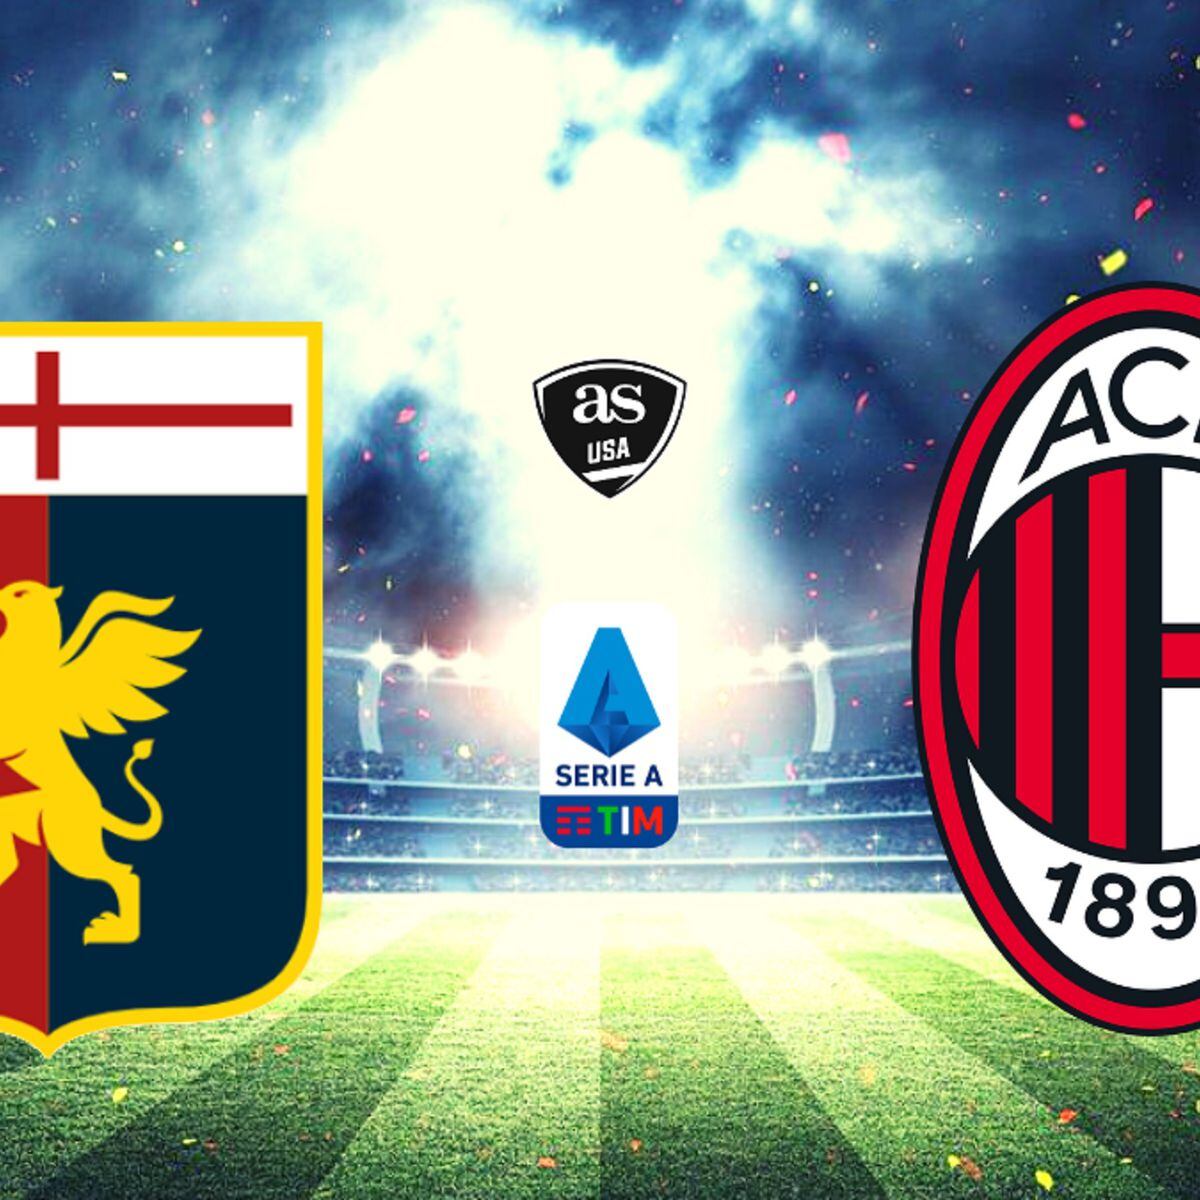 How to Watch Cagliari vs. Genoa CFC: Live Stream, TV Channel